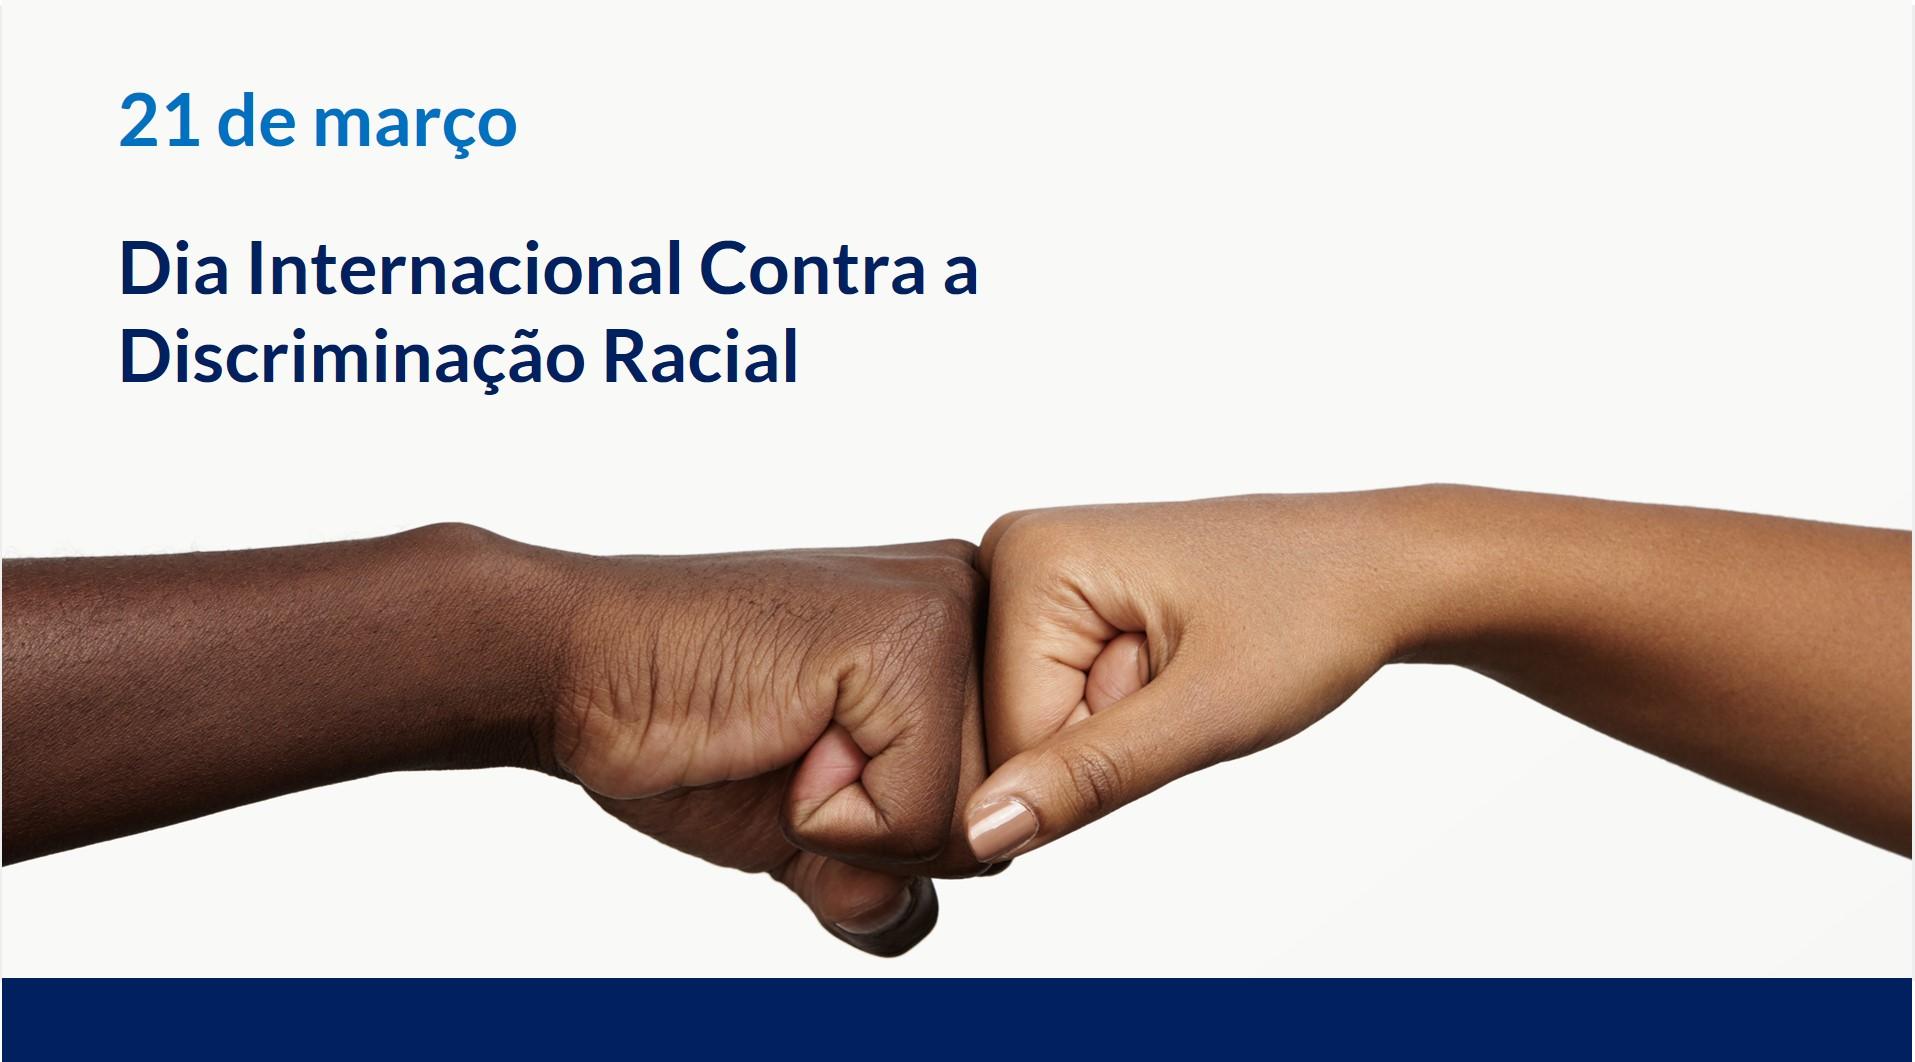 Brasil e o Combate à Discriminação Racial: Reflexões no Dia Internacional Contra a Discriminação Racial.